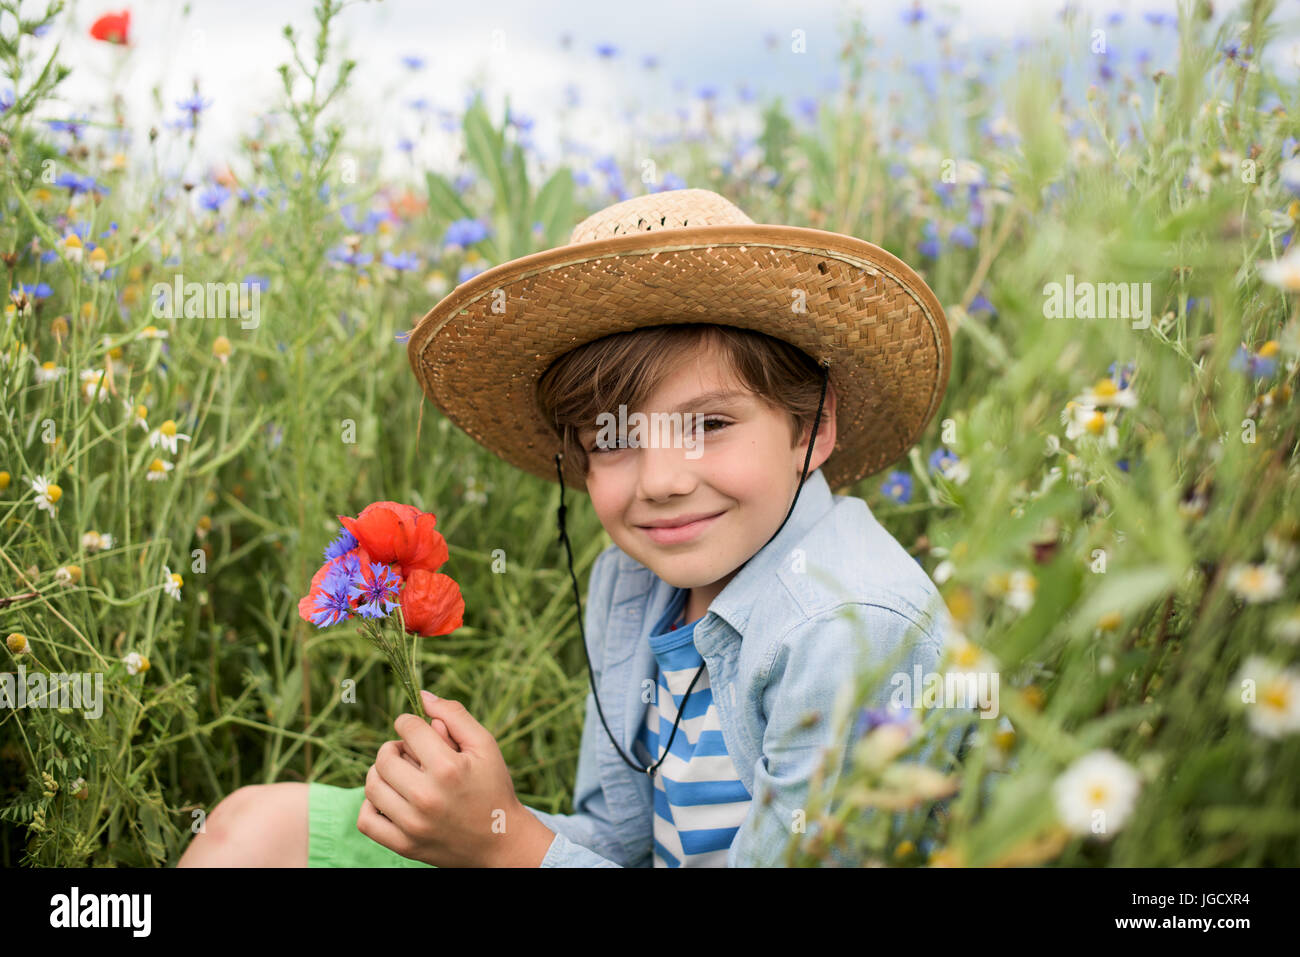 Smiling boy assis dans un champ de fleurs sauvages tenant un bouquet de fleurs Banque D'Images